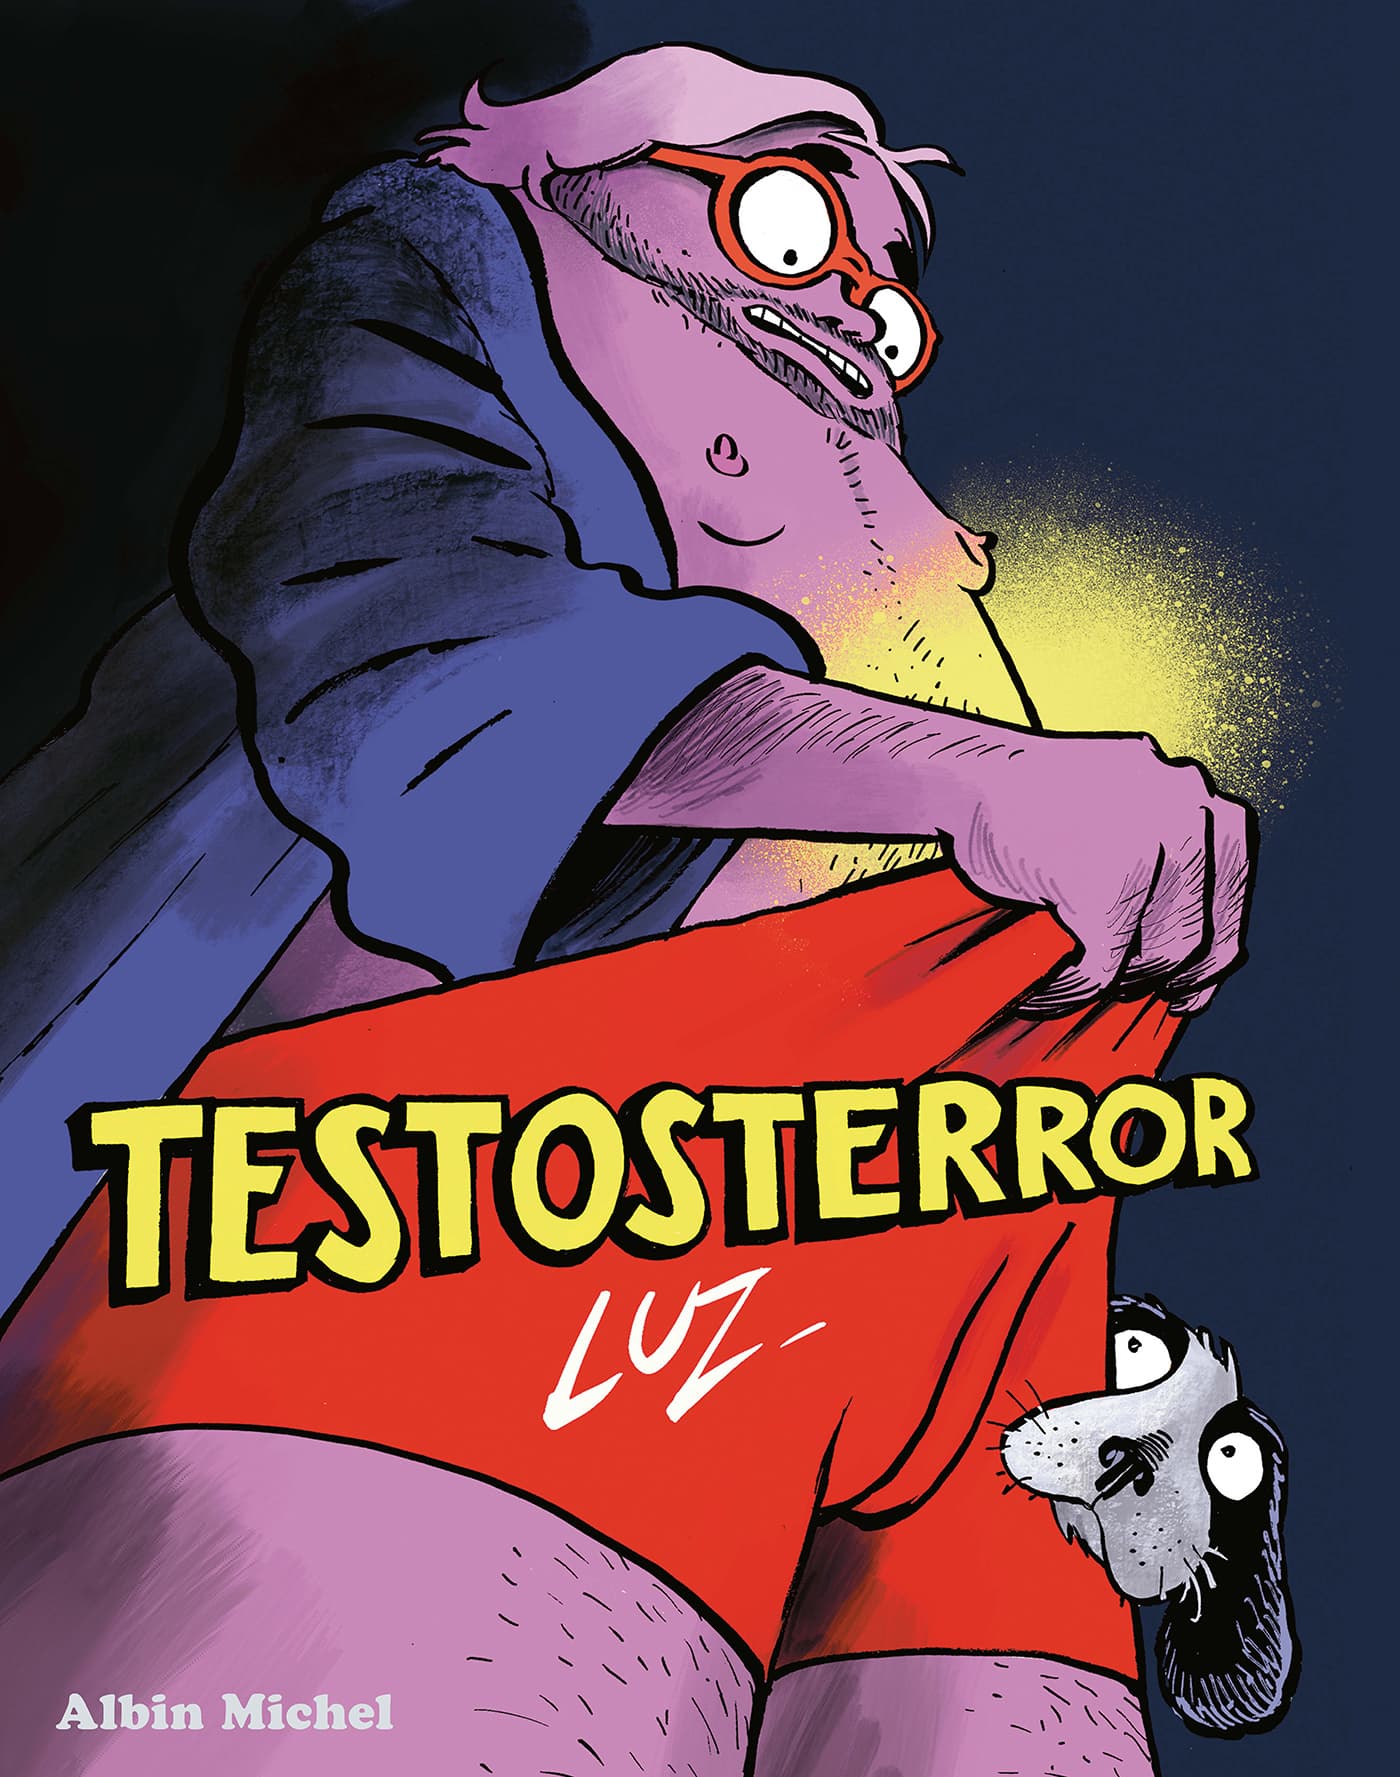 Luz parodie la virilité dans sa nouvelle bande dessinée Testosterror